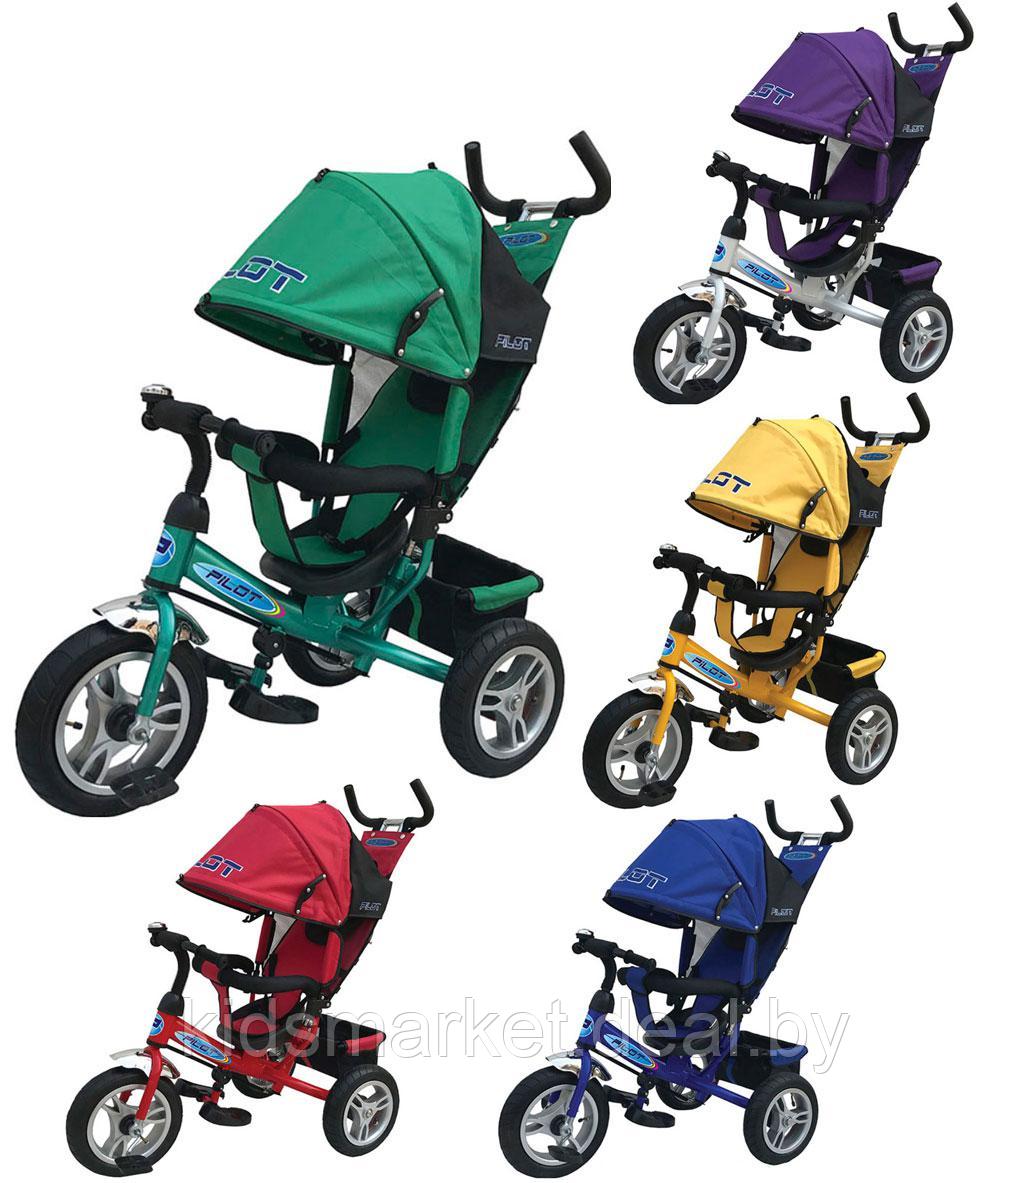 Велосипед детский Trike Pilot надувные колеса 12" и 10" расцветки в ассортименте